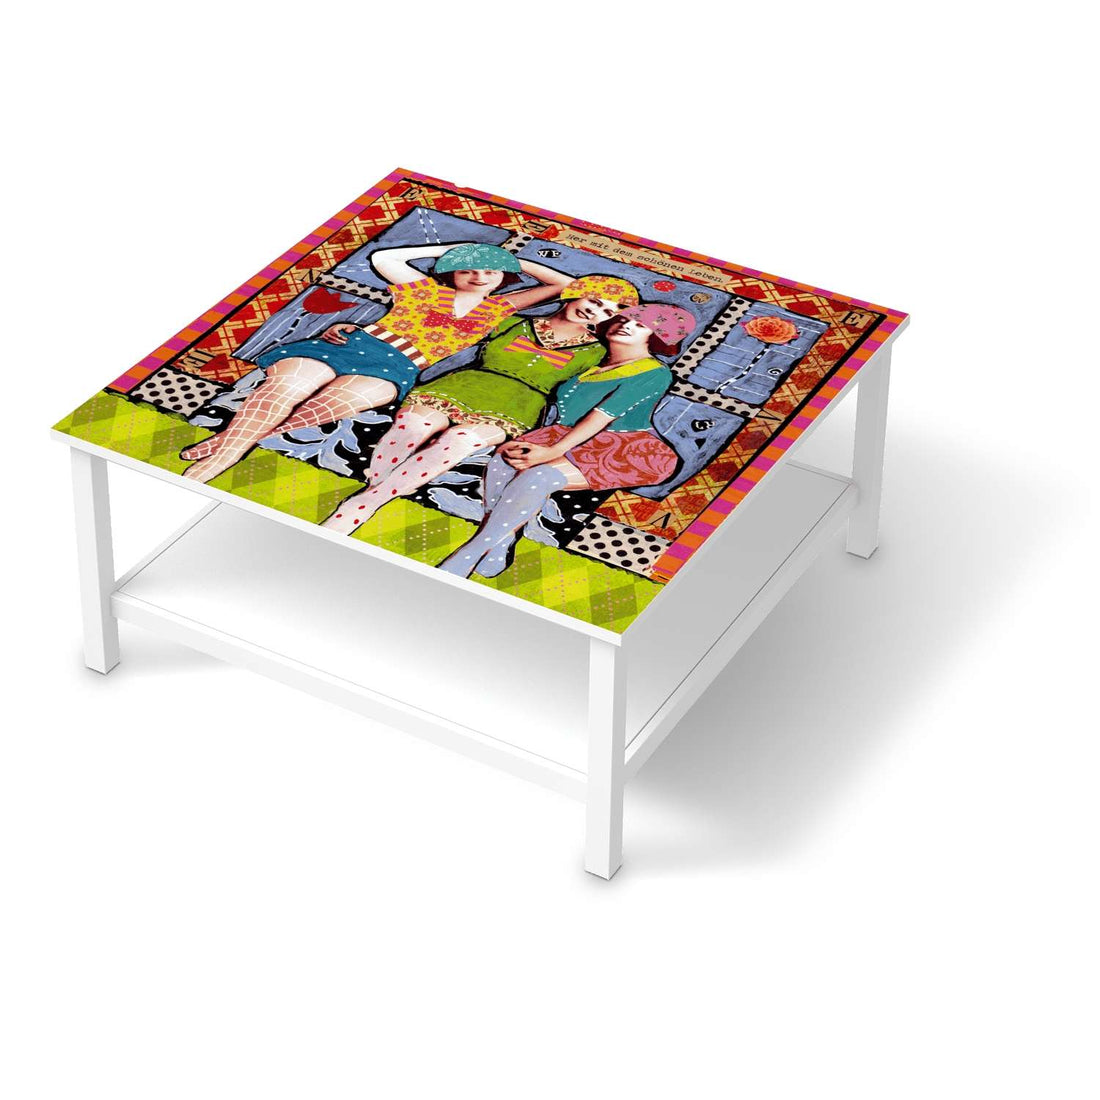 Klebefolie für Möbel Her mit dem schönen Leben - IKEA Hemnes Couchtisch 90x90 cm  - weiss